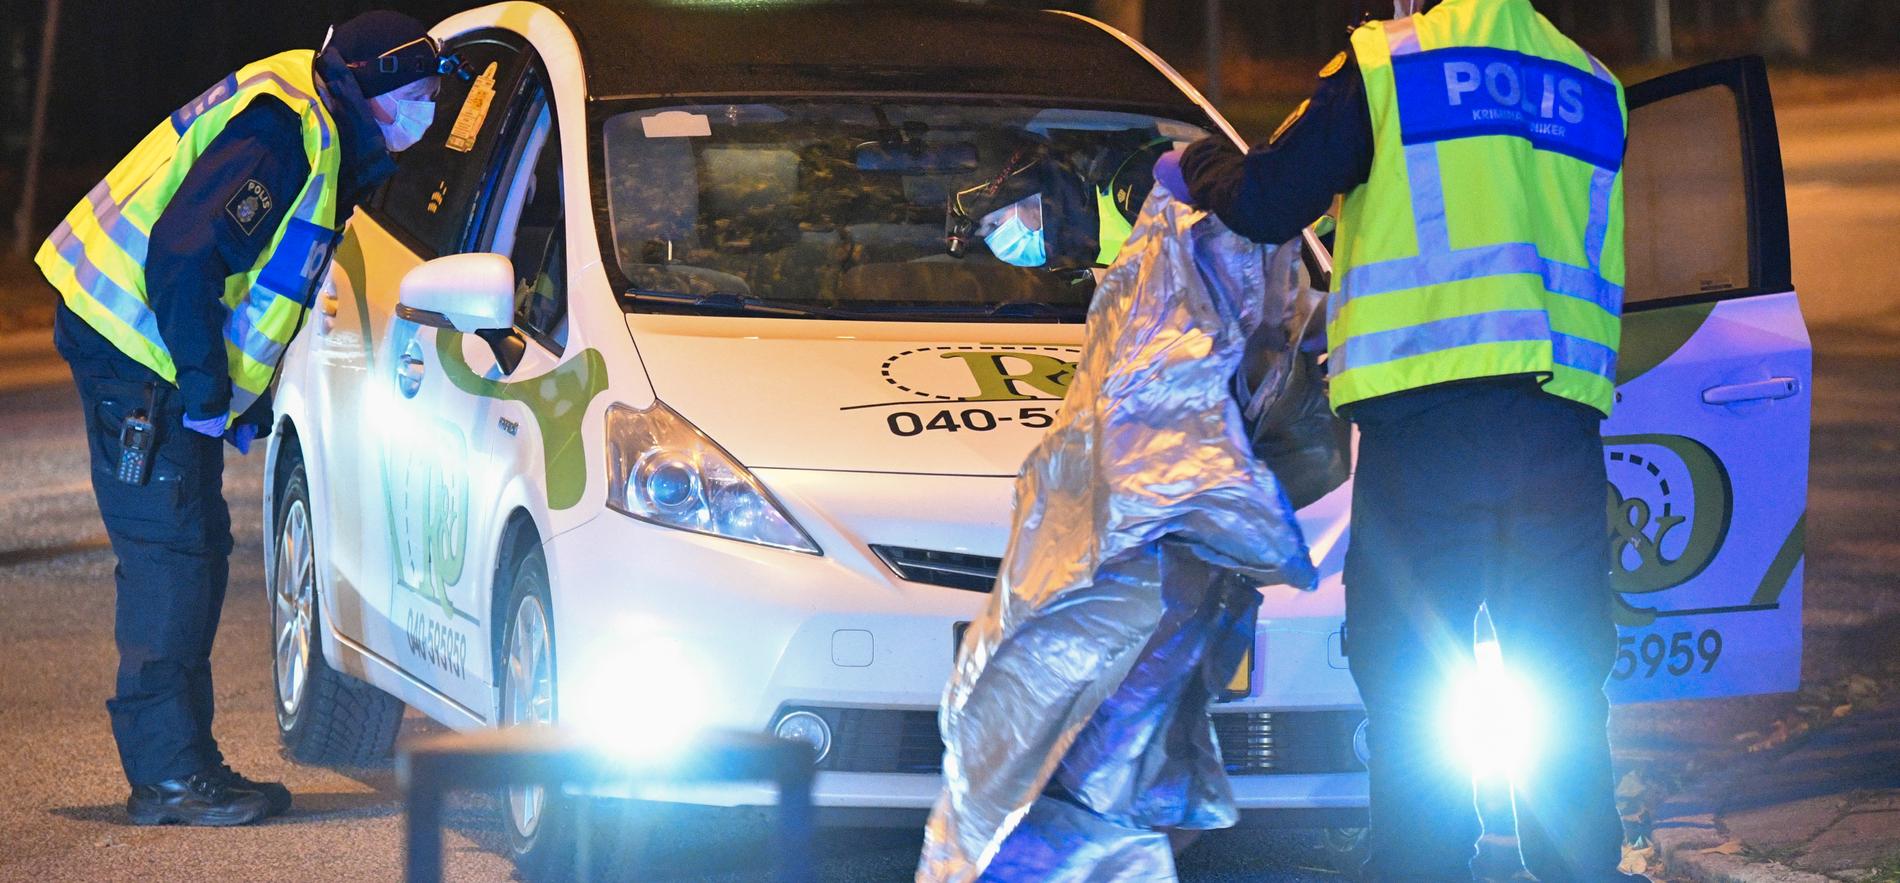 Natten till 3 november förra året blev en chaufför från Ringduve Taxi beskjuten i sin bil i Rosengård i Malmö, ett av flera attacker mot företagets bilar. Nu har bolaget gjort jättekonkurs.